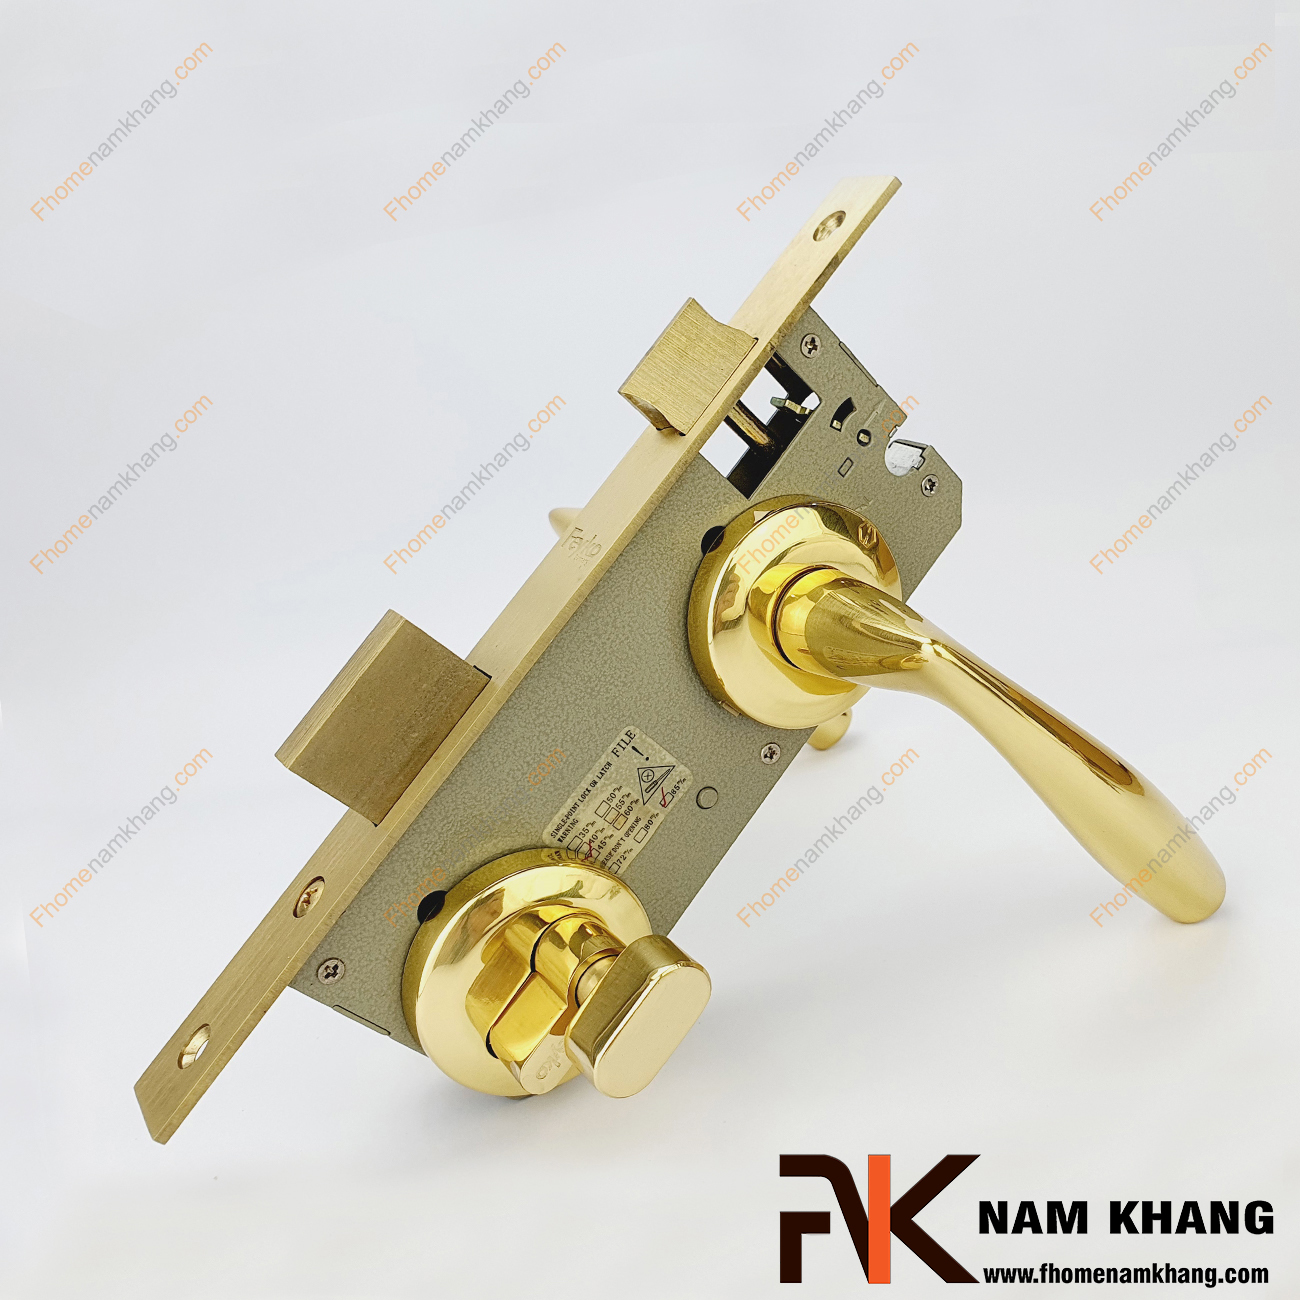 Khóa cửa phân thể hiện đại màu vàng bóng NK551-24K được sản xuất từ đồng cao cấp, có độ bền cao và kết cấu bền chặt.